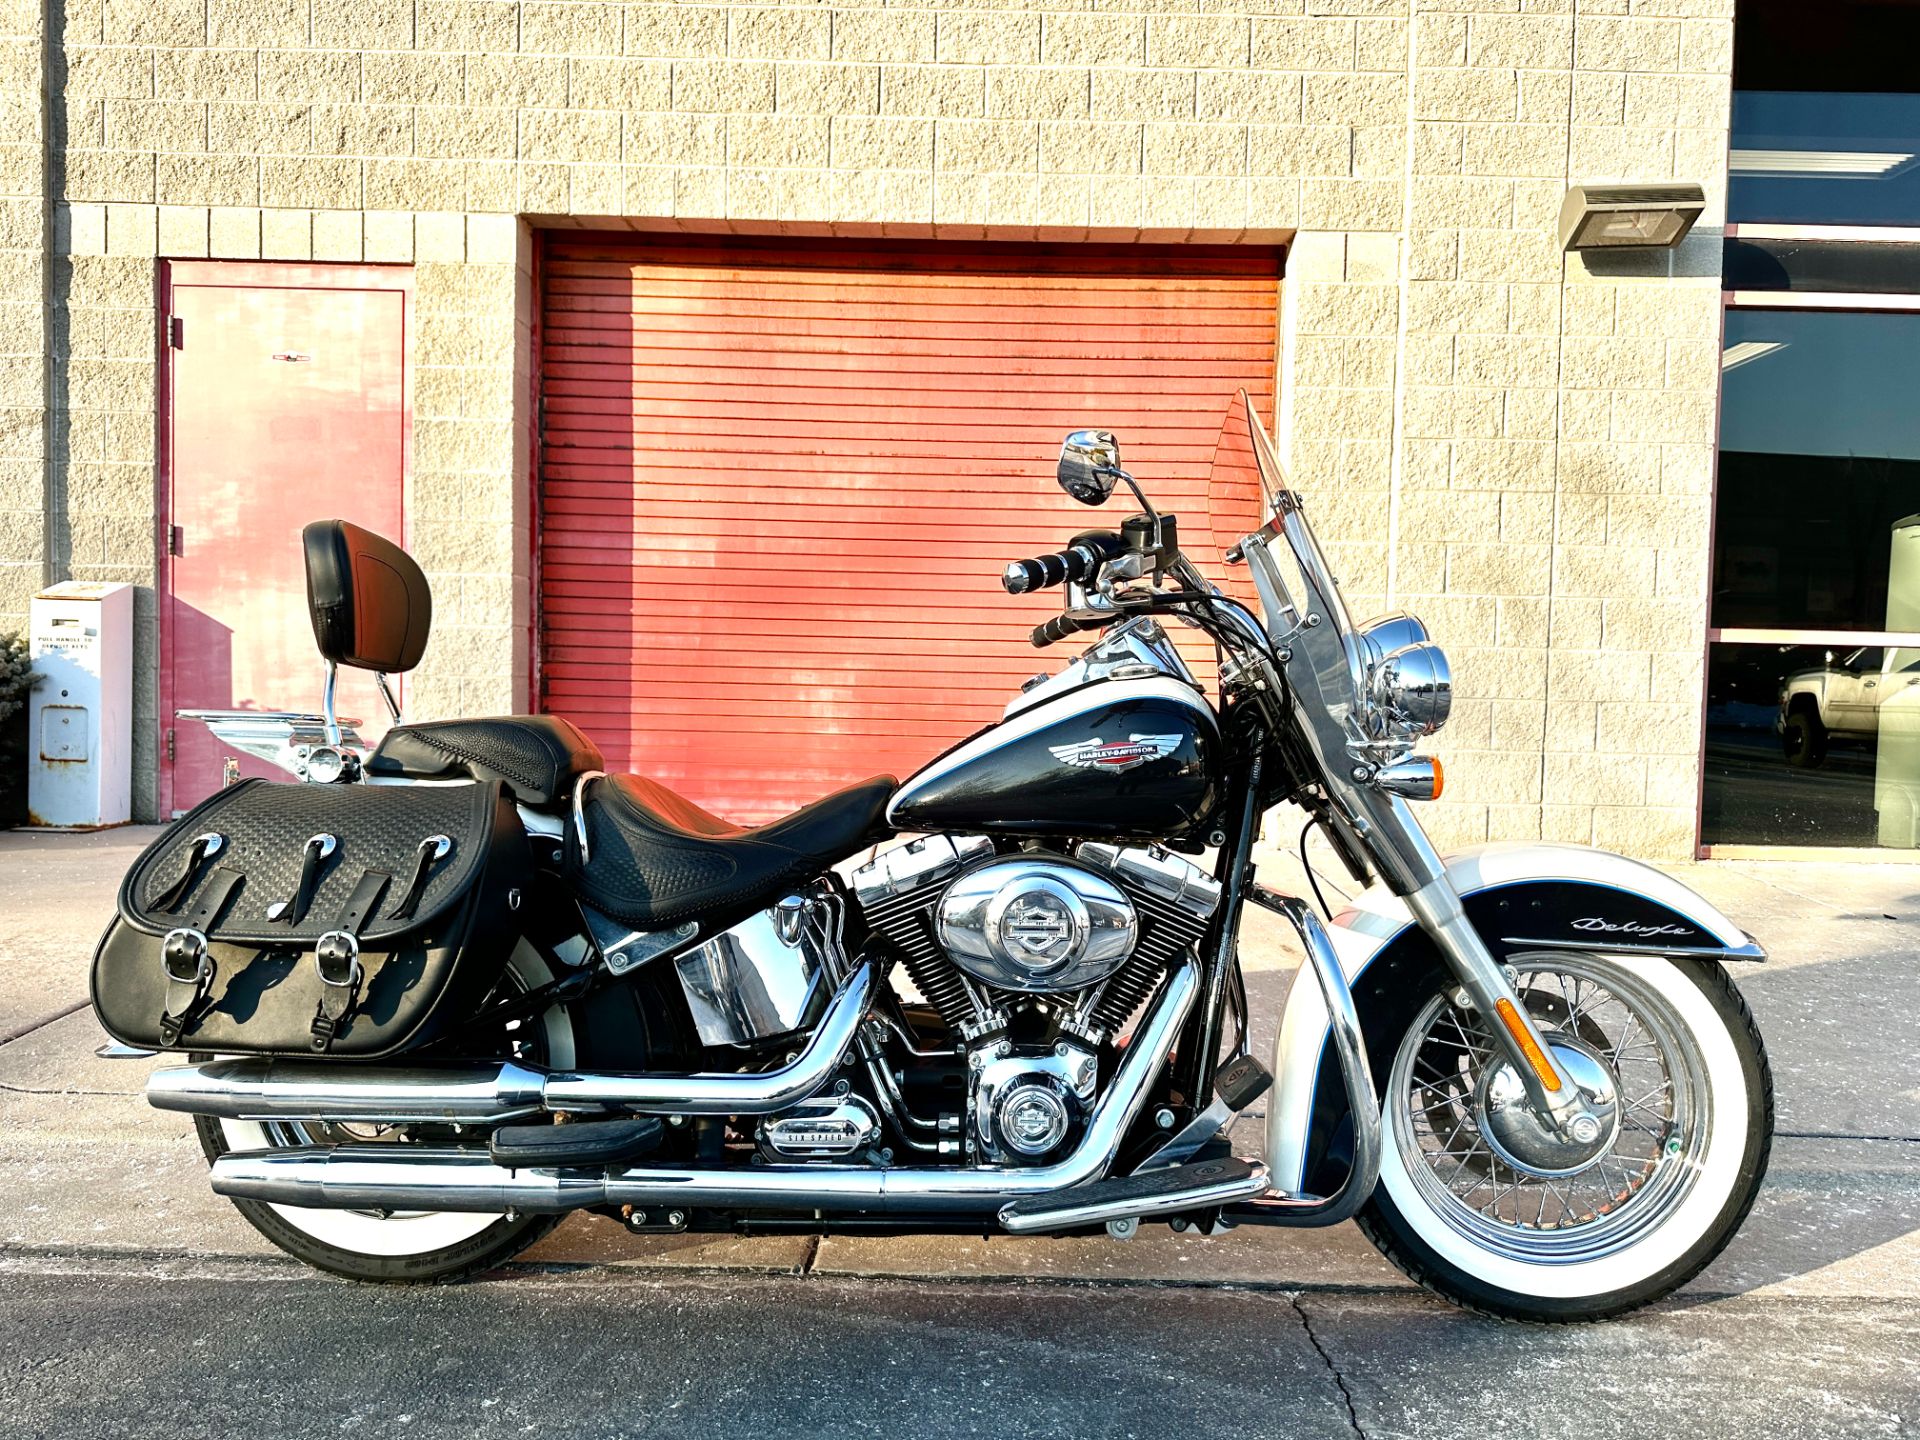 2012 Harley-Davidson Softail® Deluxe in Sandy, Utah - Photo 1